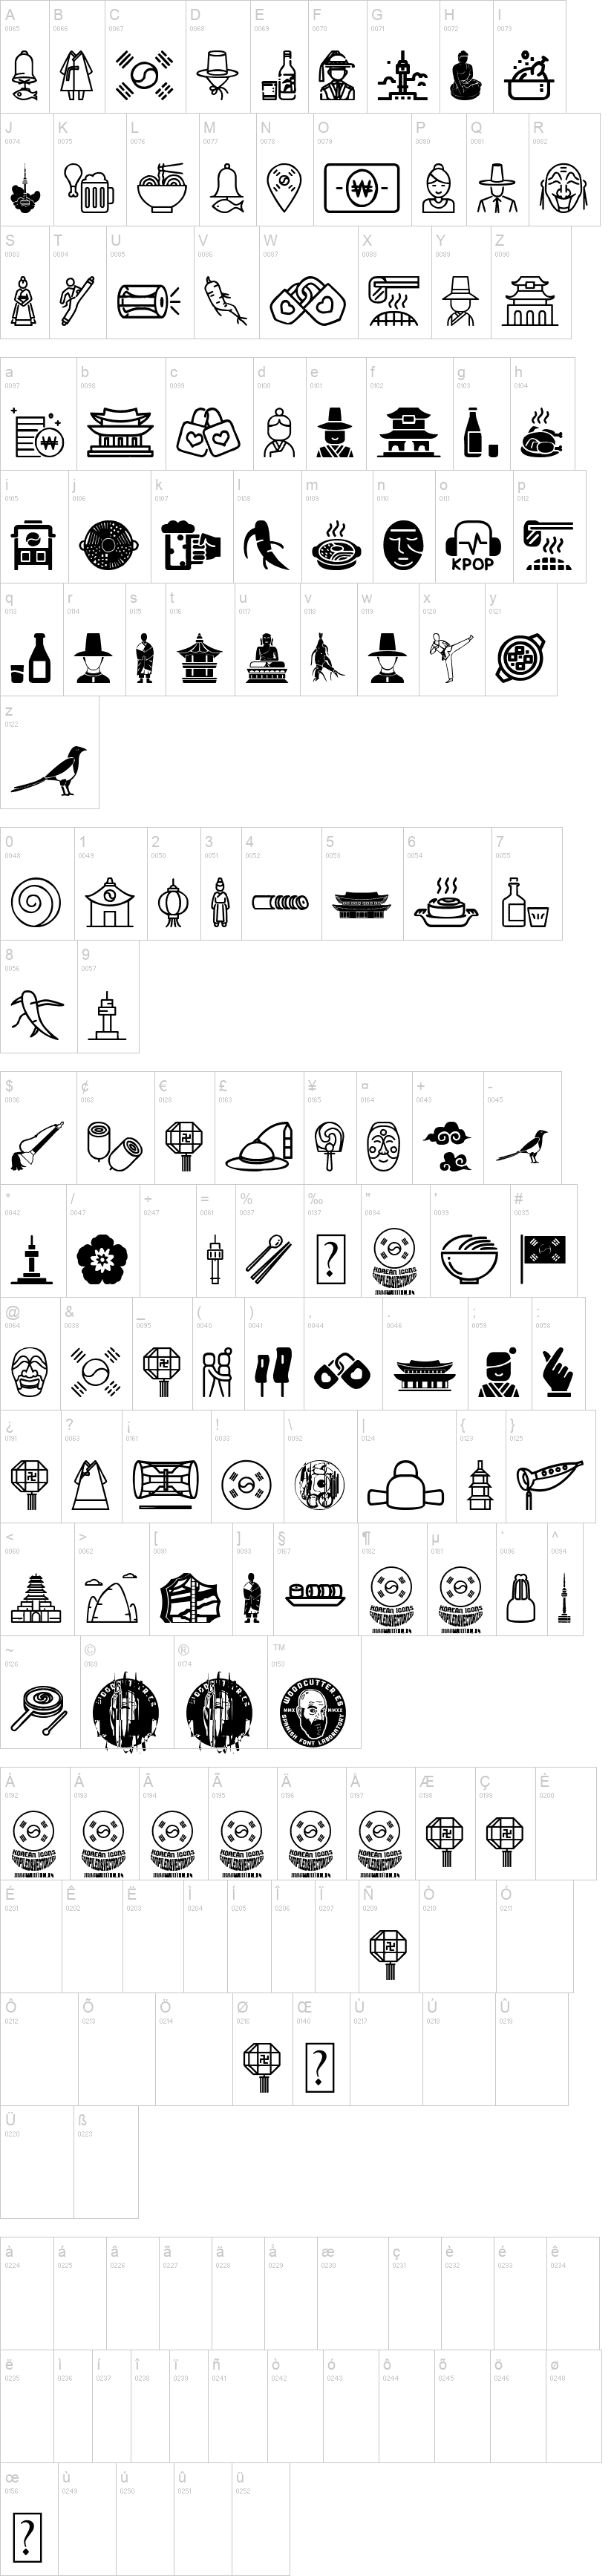 Korean Icons